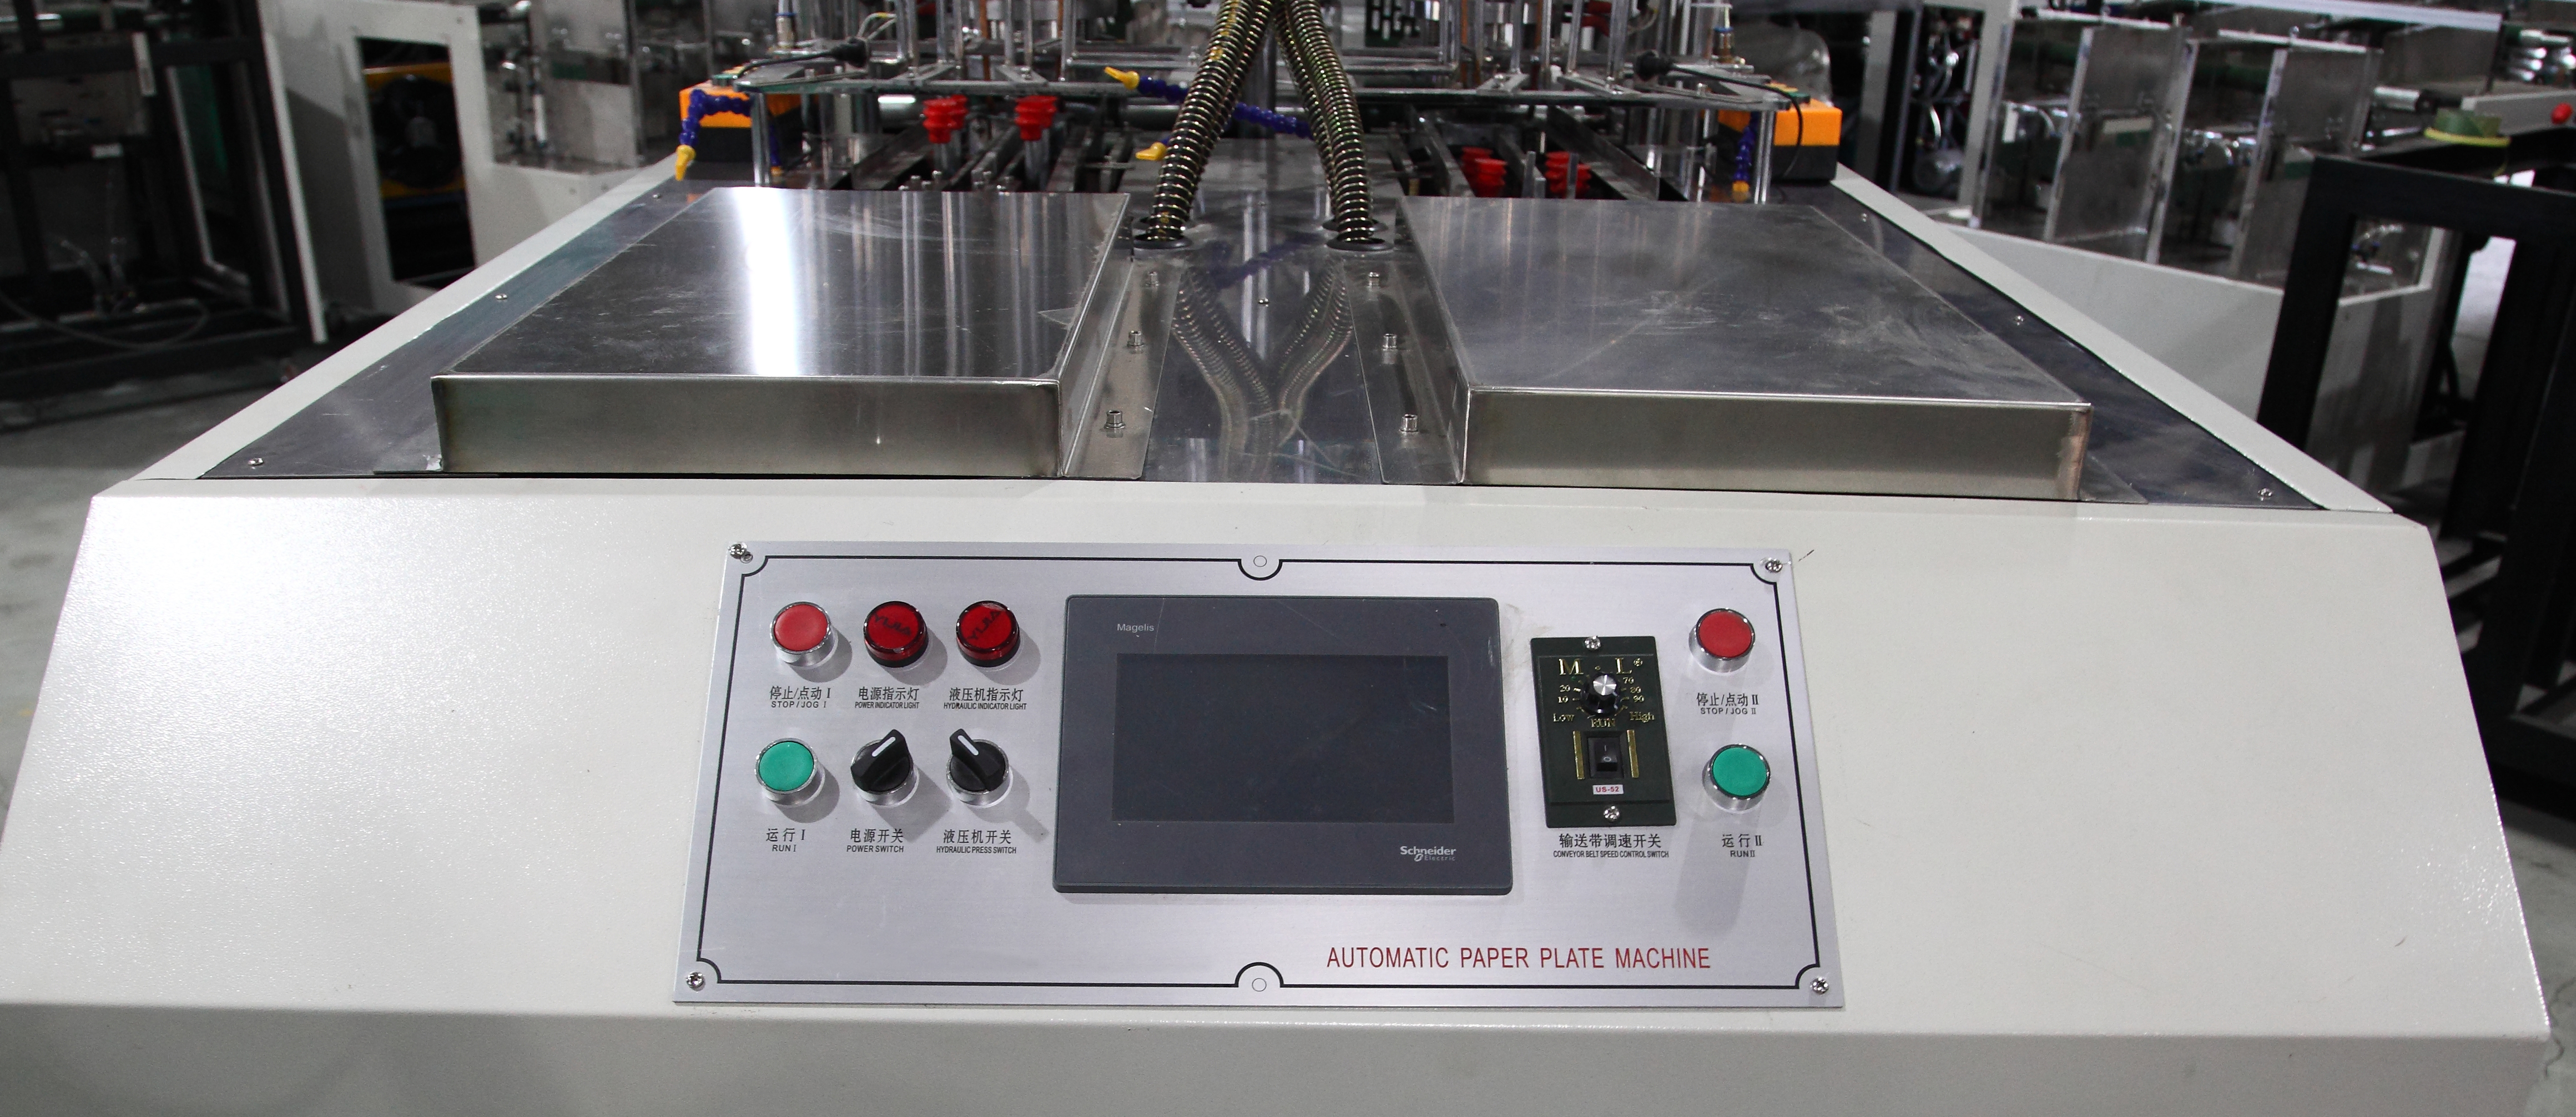 Hydraulic Control Paper Plate Machine pic 3